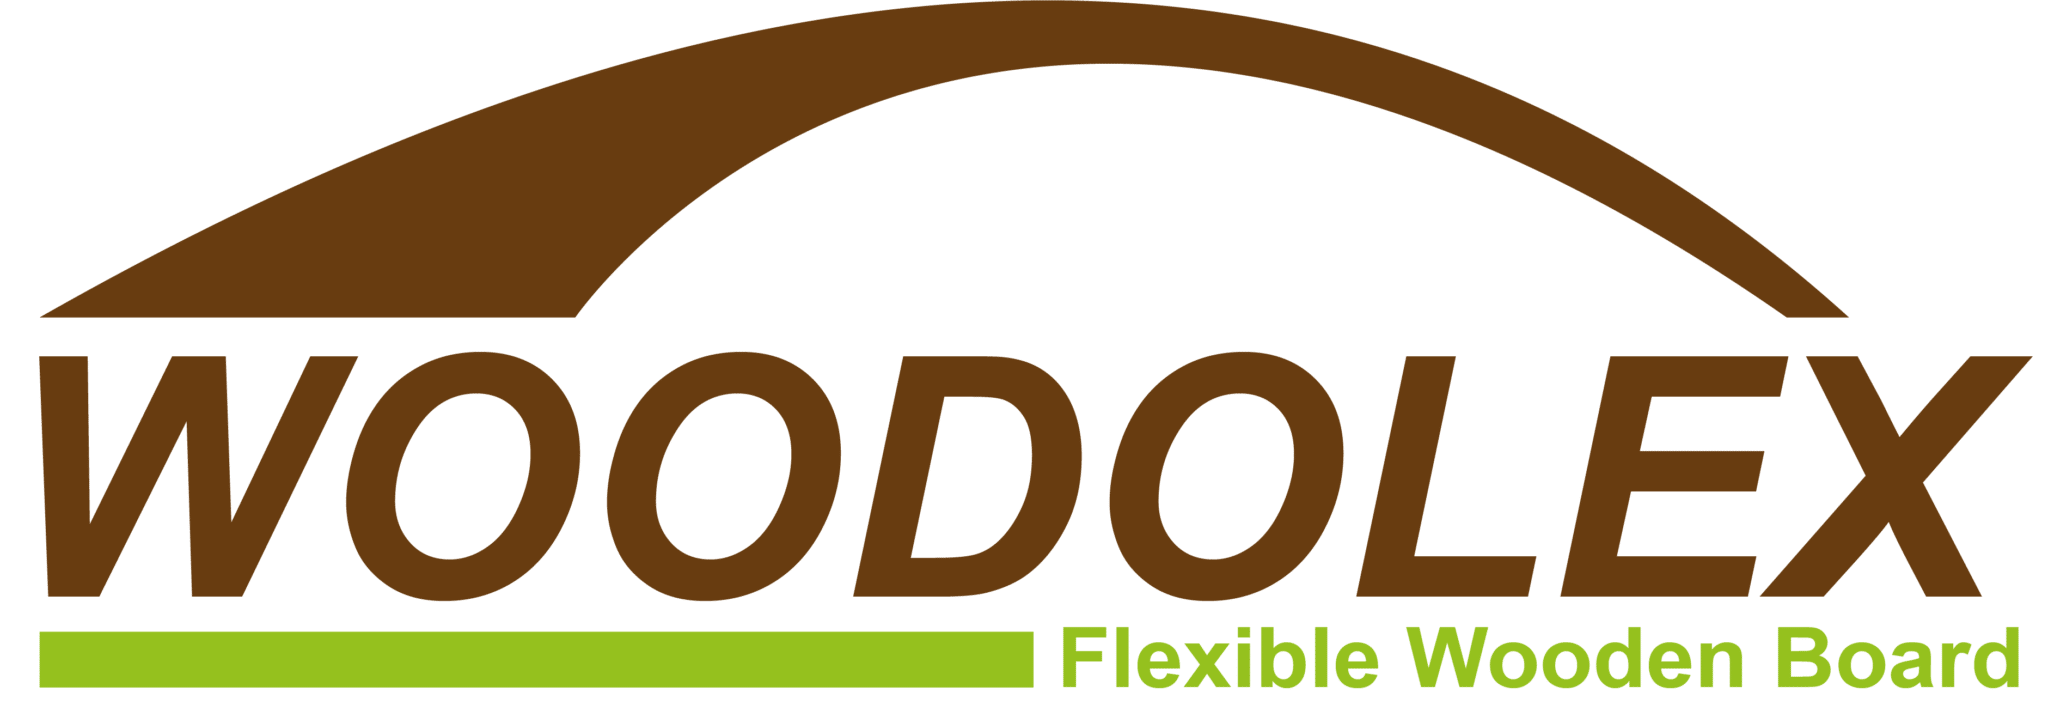 woodolex-logo